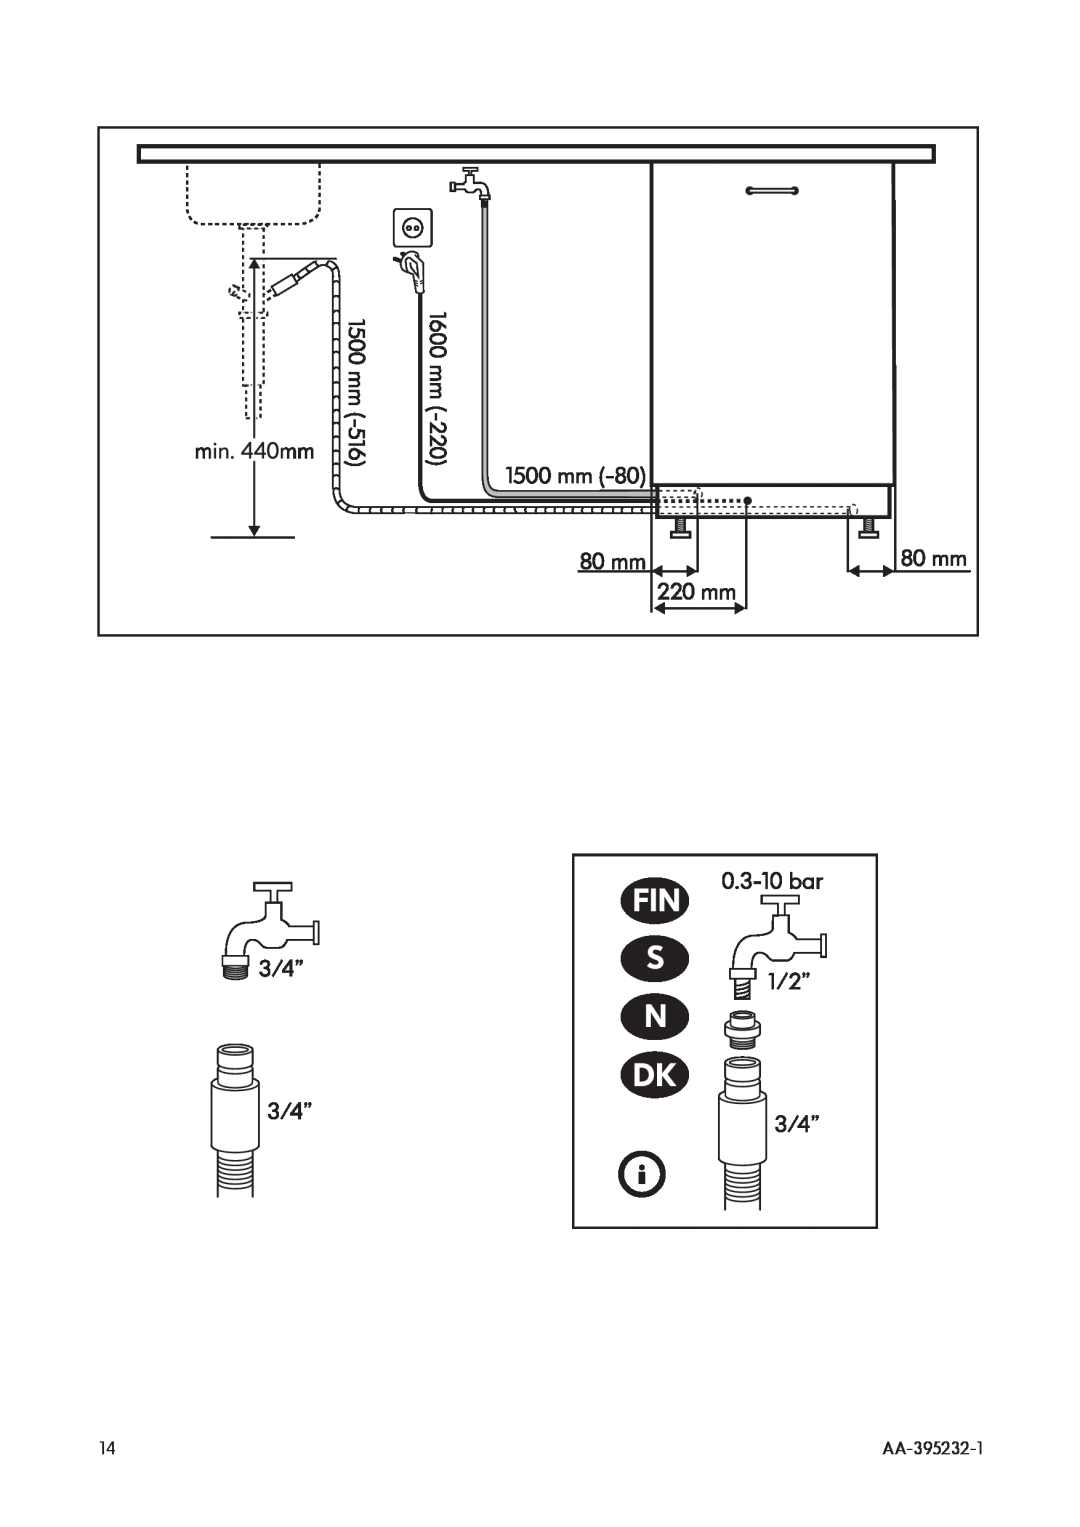 IKEA DWT160 manual Fin S N, AA-395232-1 